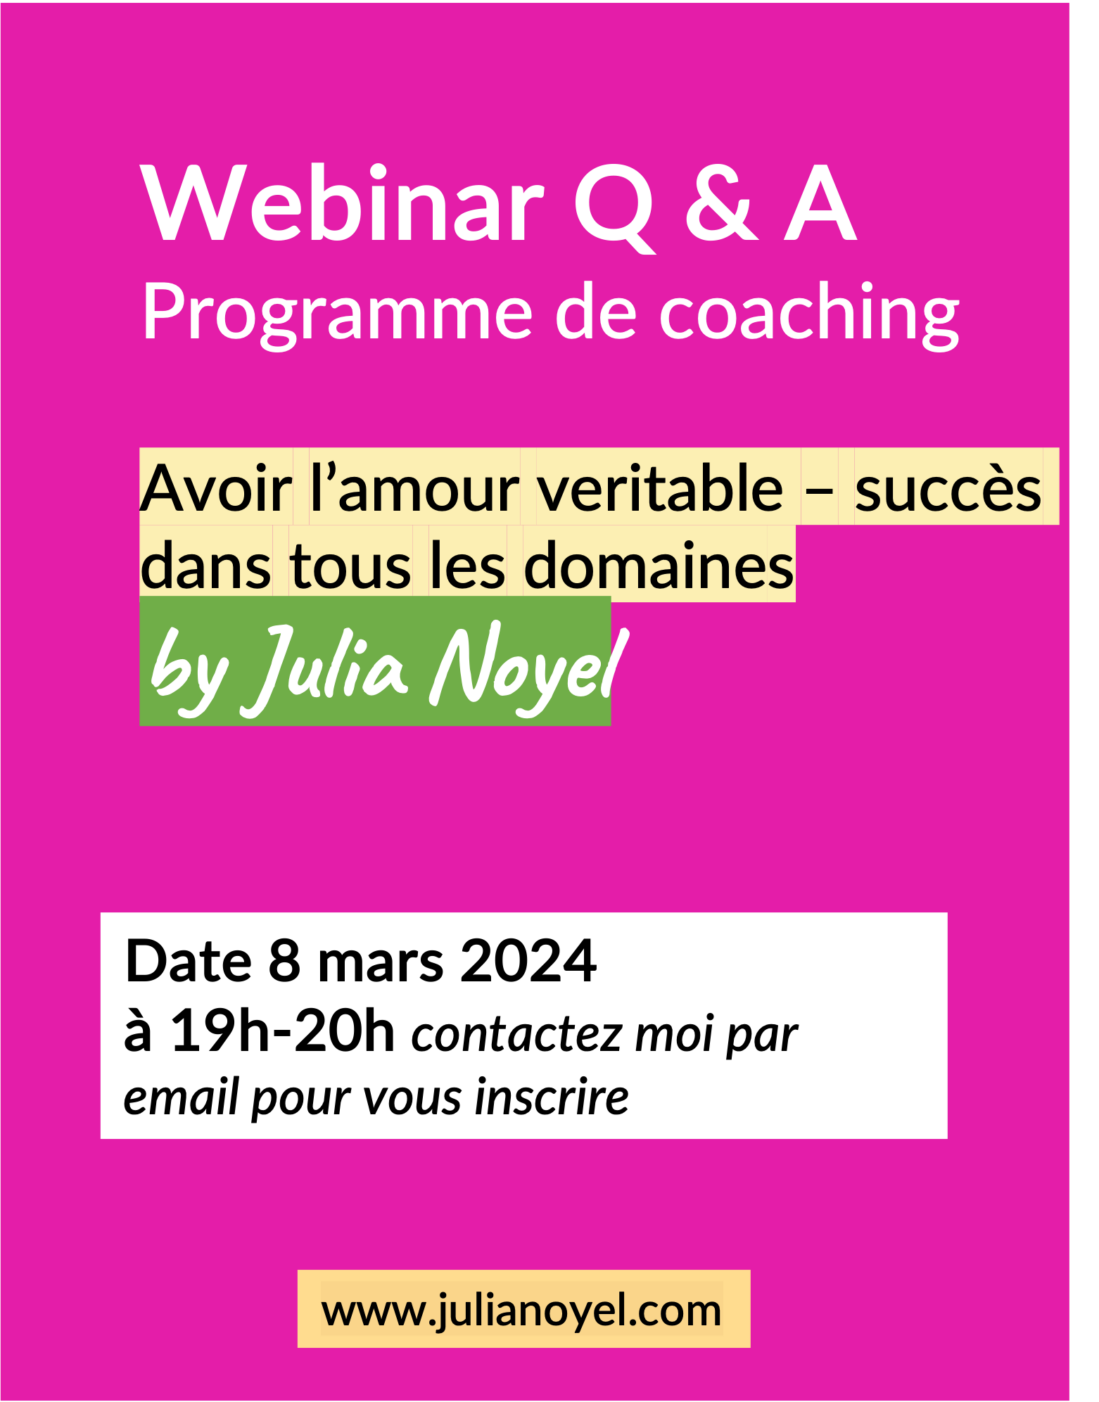 Webinar Q & A 
Programme de coaching
Amour veritable – succès dans tous les domaines
by Julia Noyel